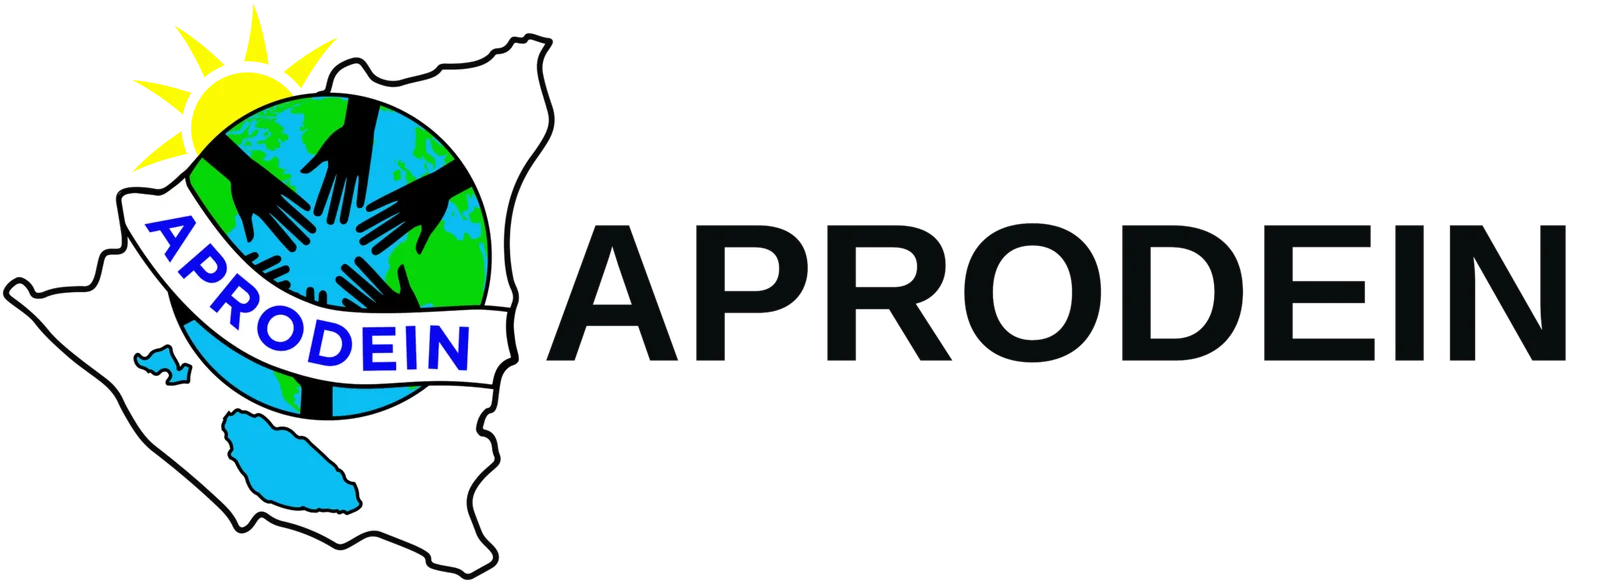 APRODEIN logo